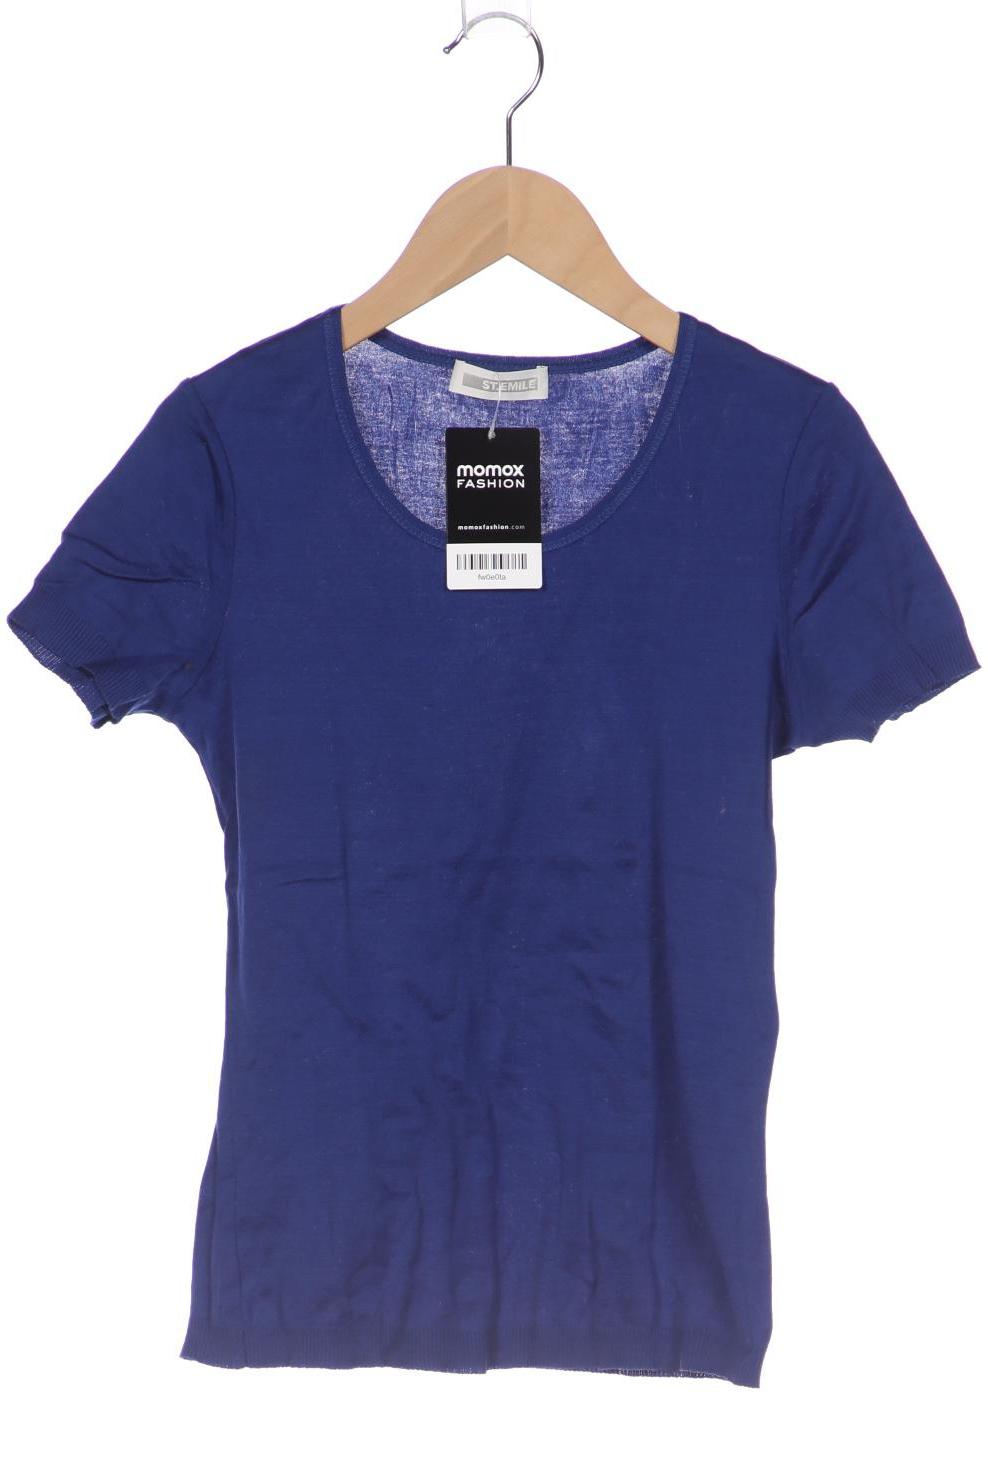 St.Emile Damen T-Shirt, marineblau, Gr. 36 von St.Emile